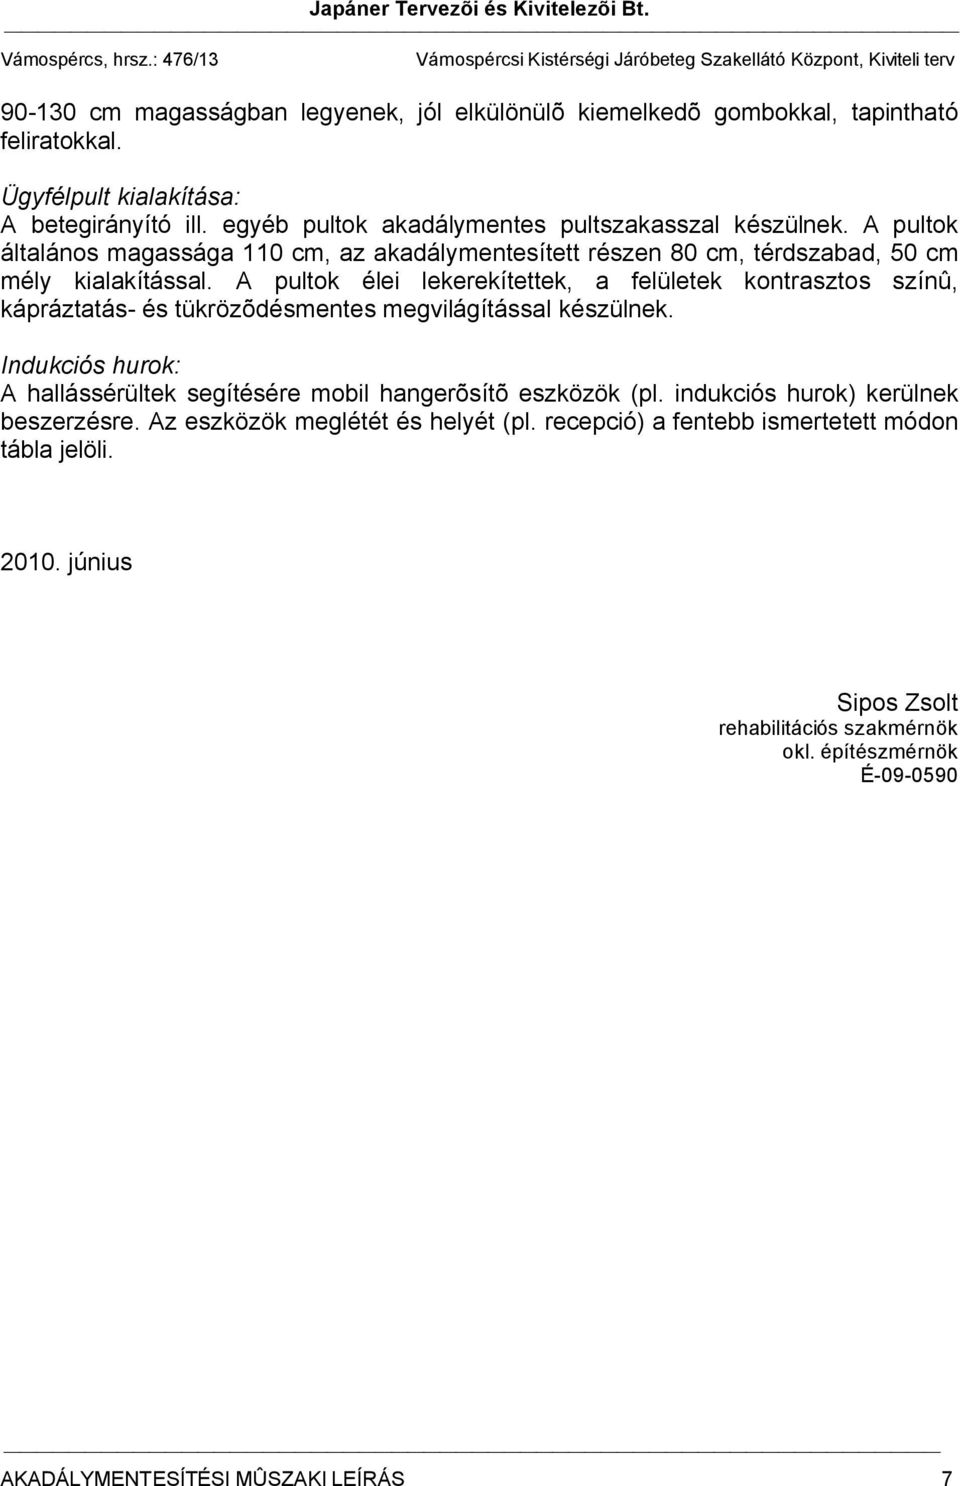 Akadálymentesítési mûszaki leírás - PDF Ingyenes letöltés